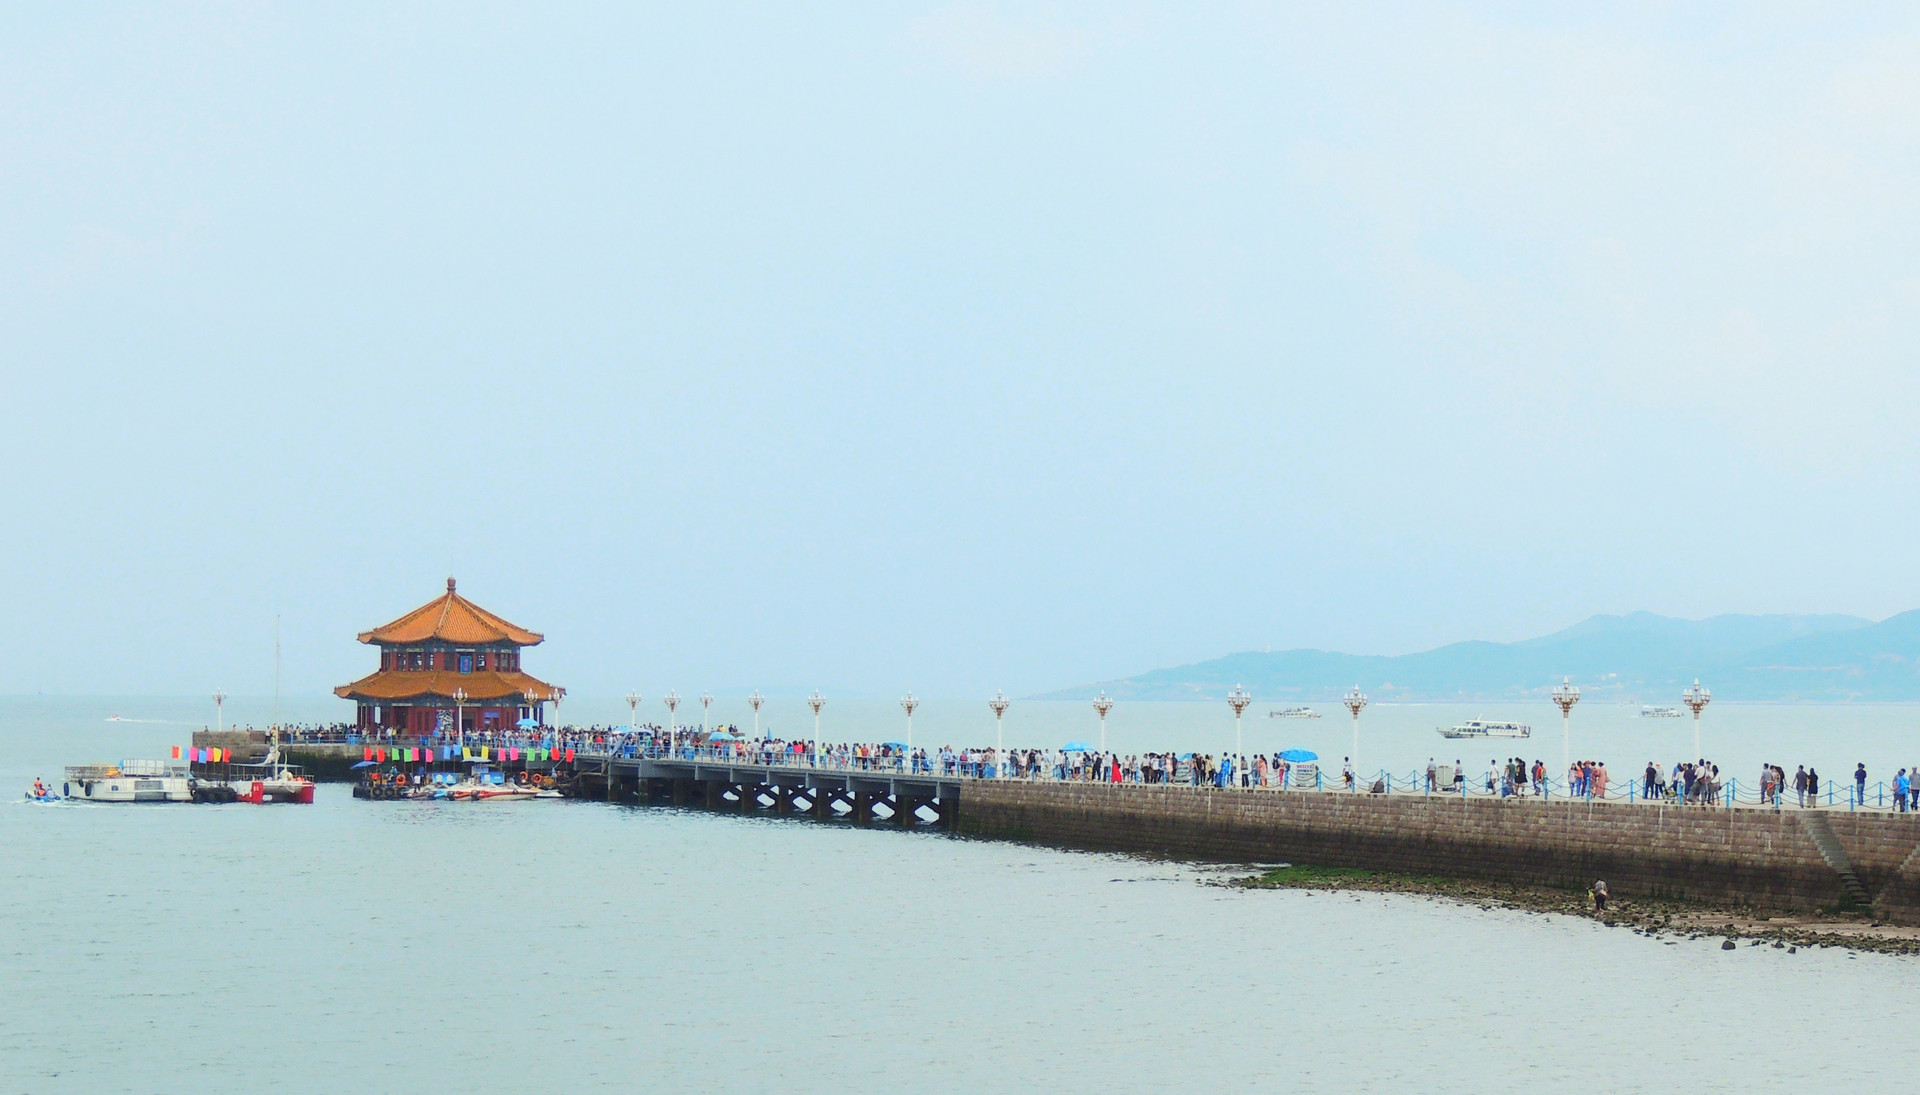 端午假期青岛栈桥景区游客云集 形成一道亮丽的风景